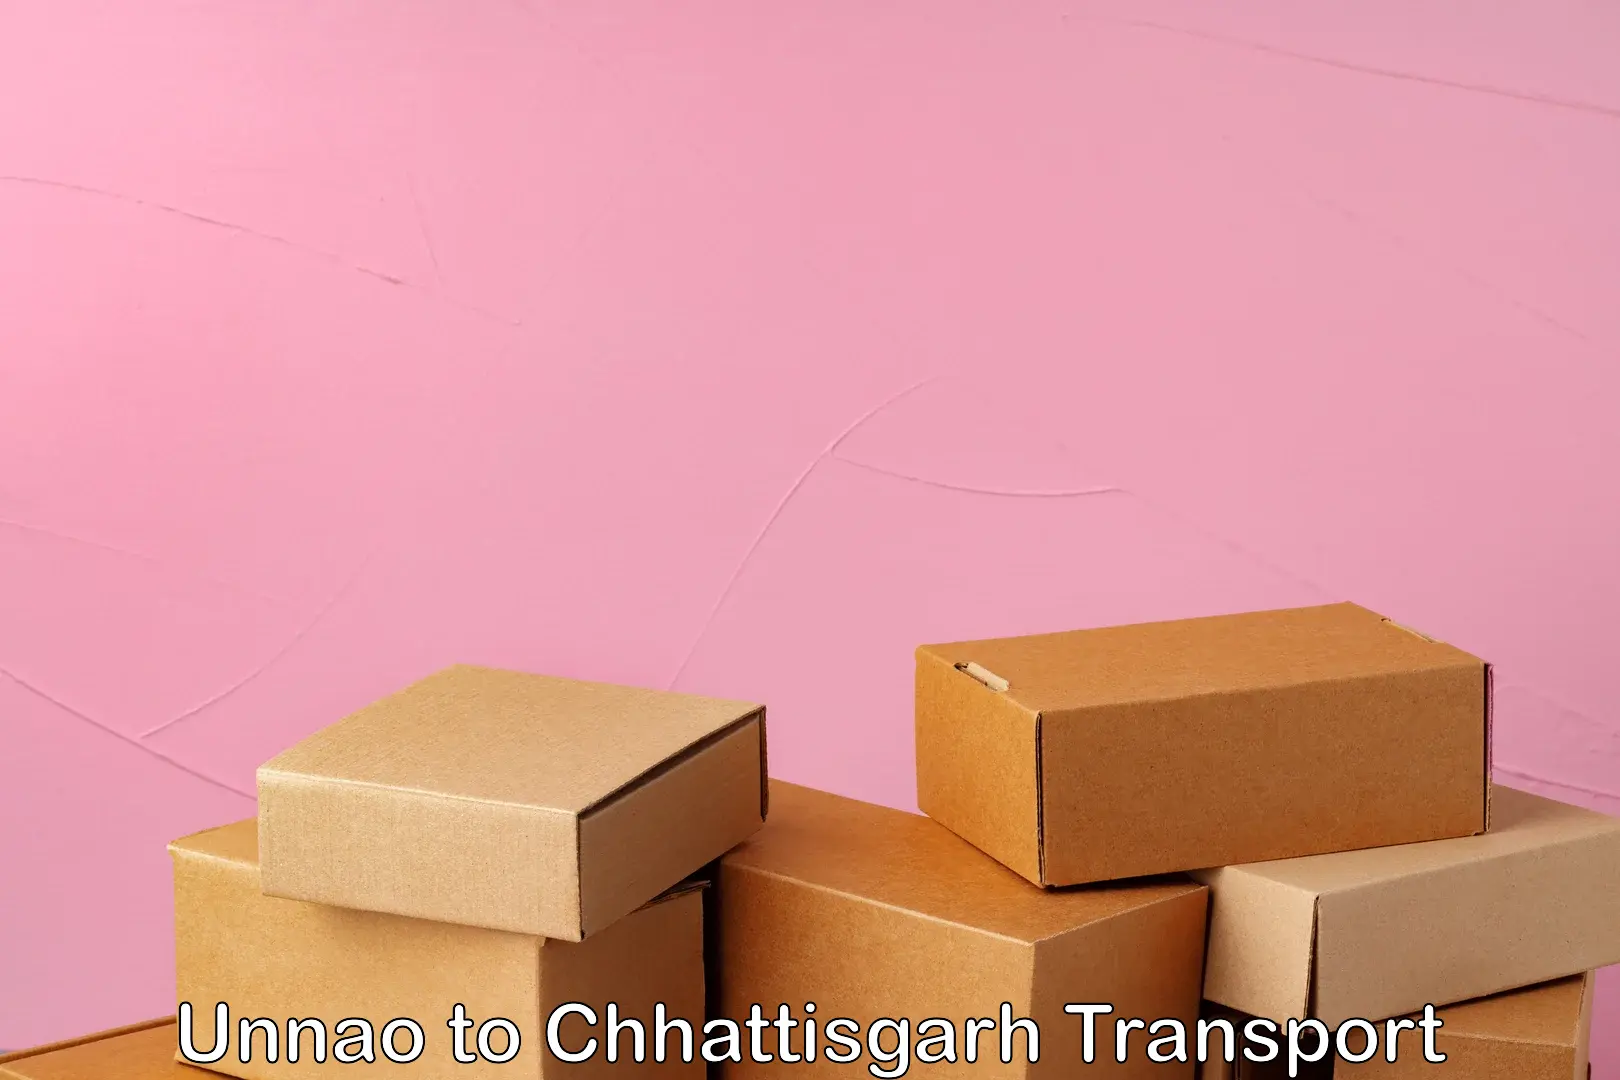 Container transport service Unnao to Chhattisgarh